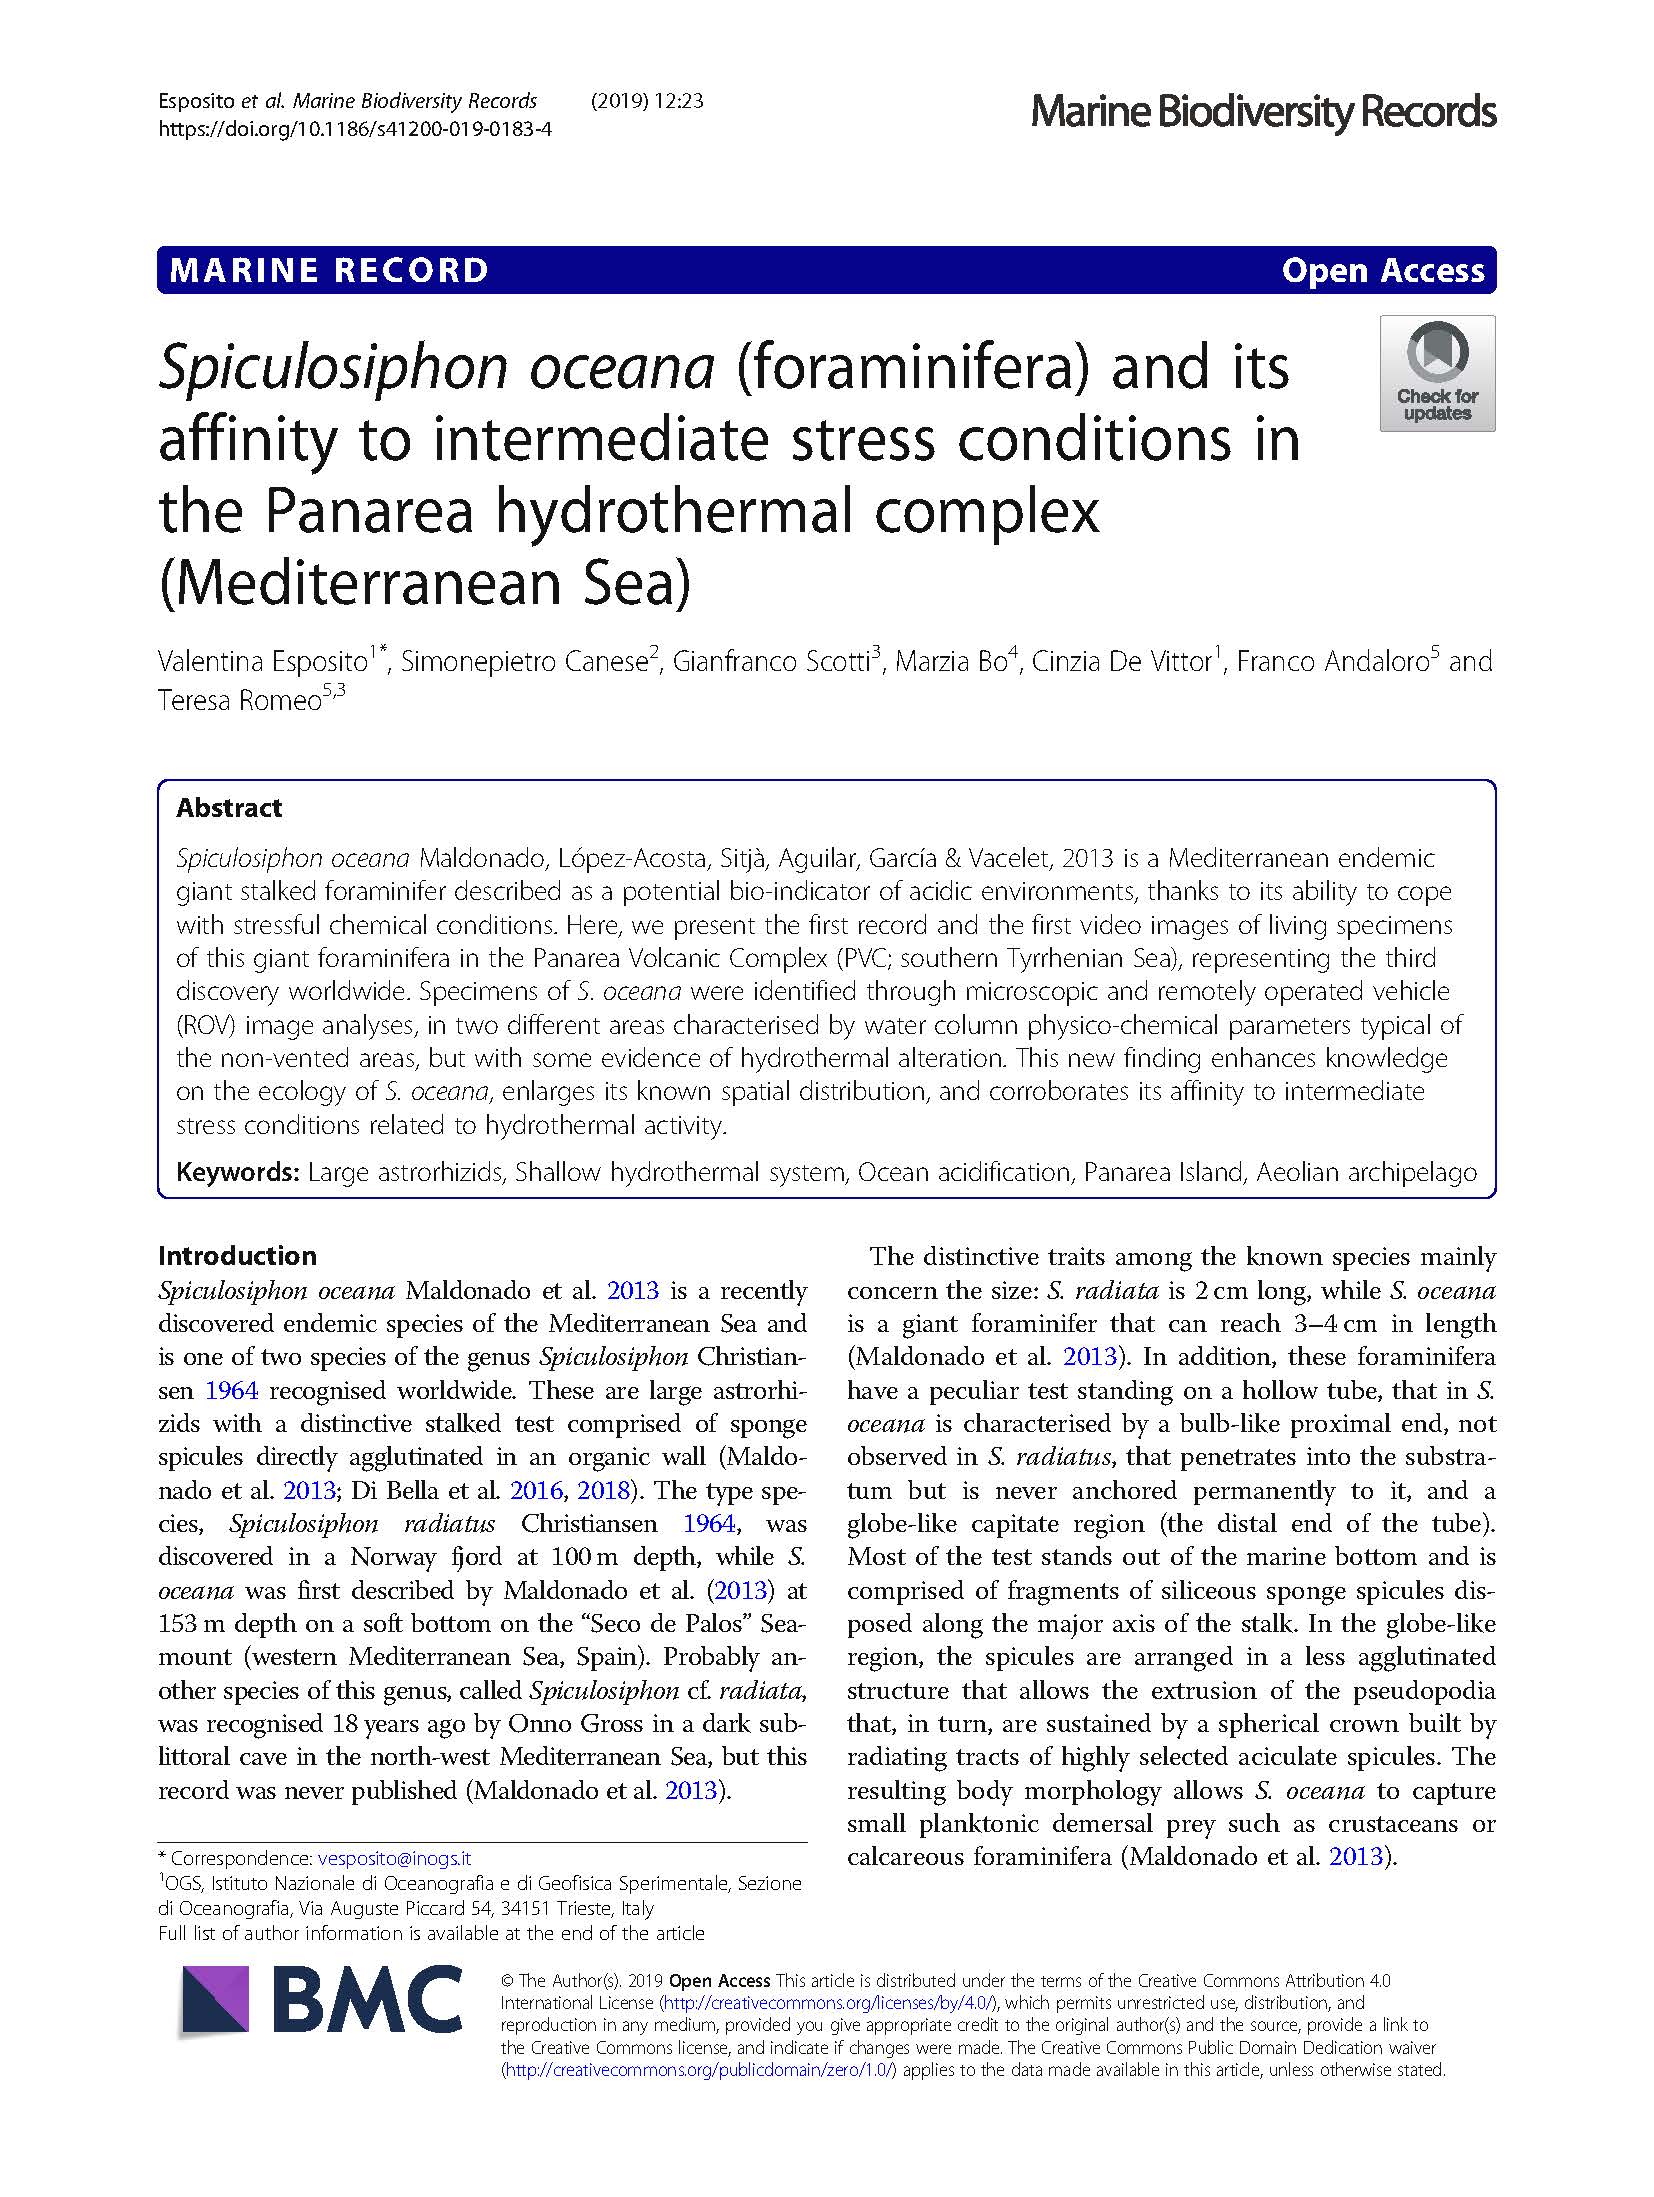 Esposito et al 2019 Spiculosiphon oceana